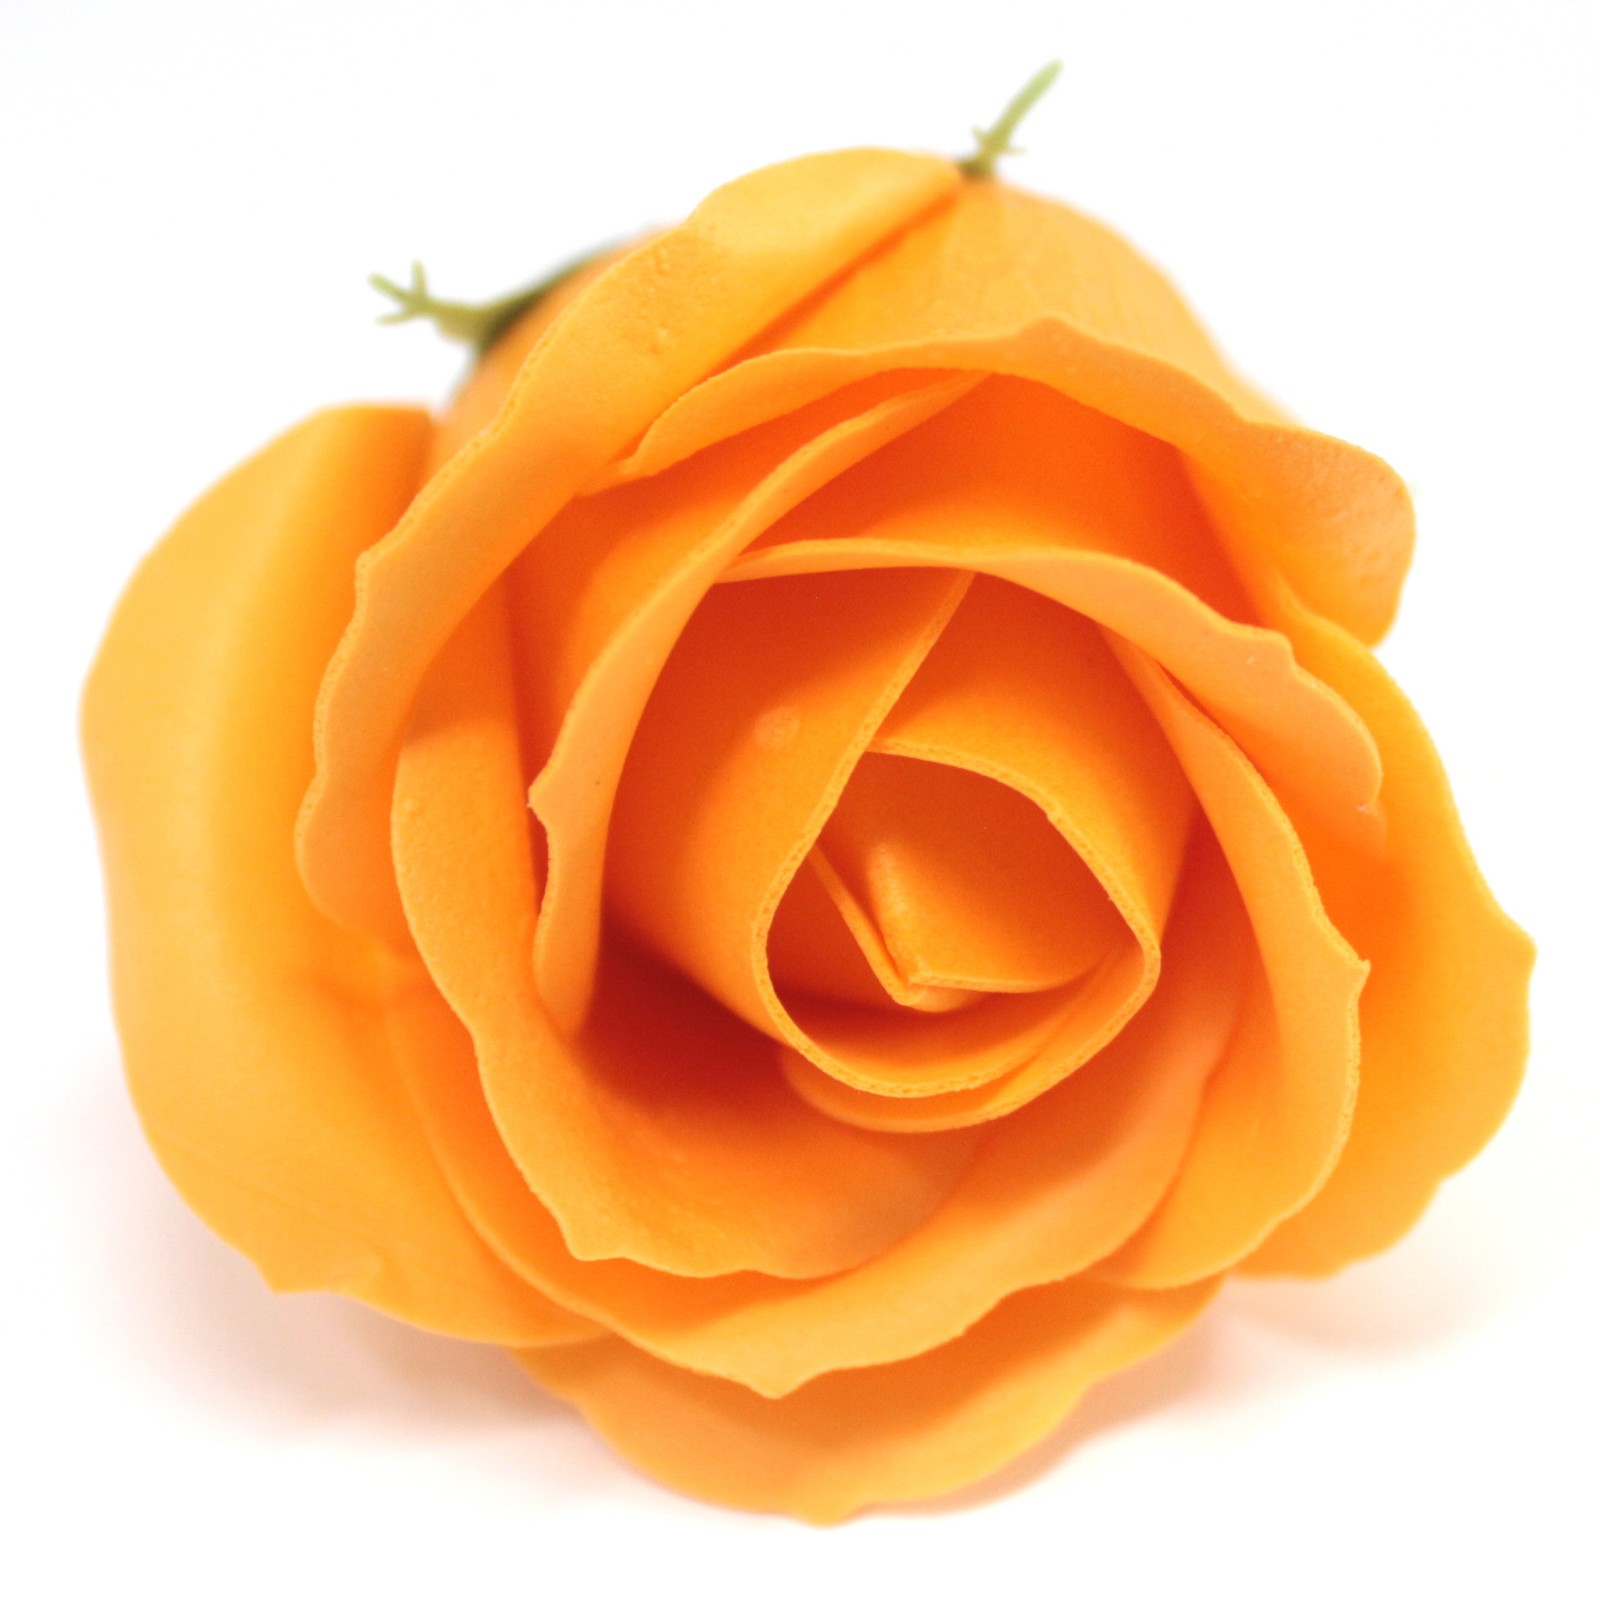 10 x Craft Soap Flowers - Med Rose - Orange